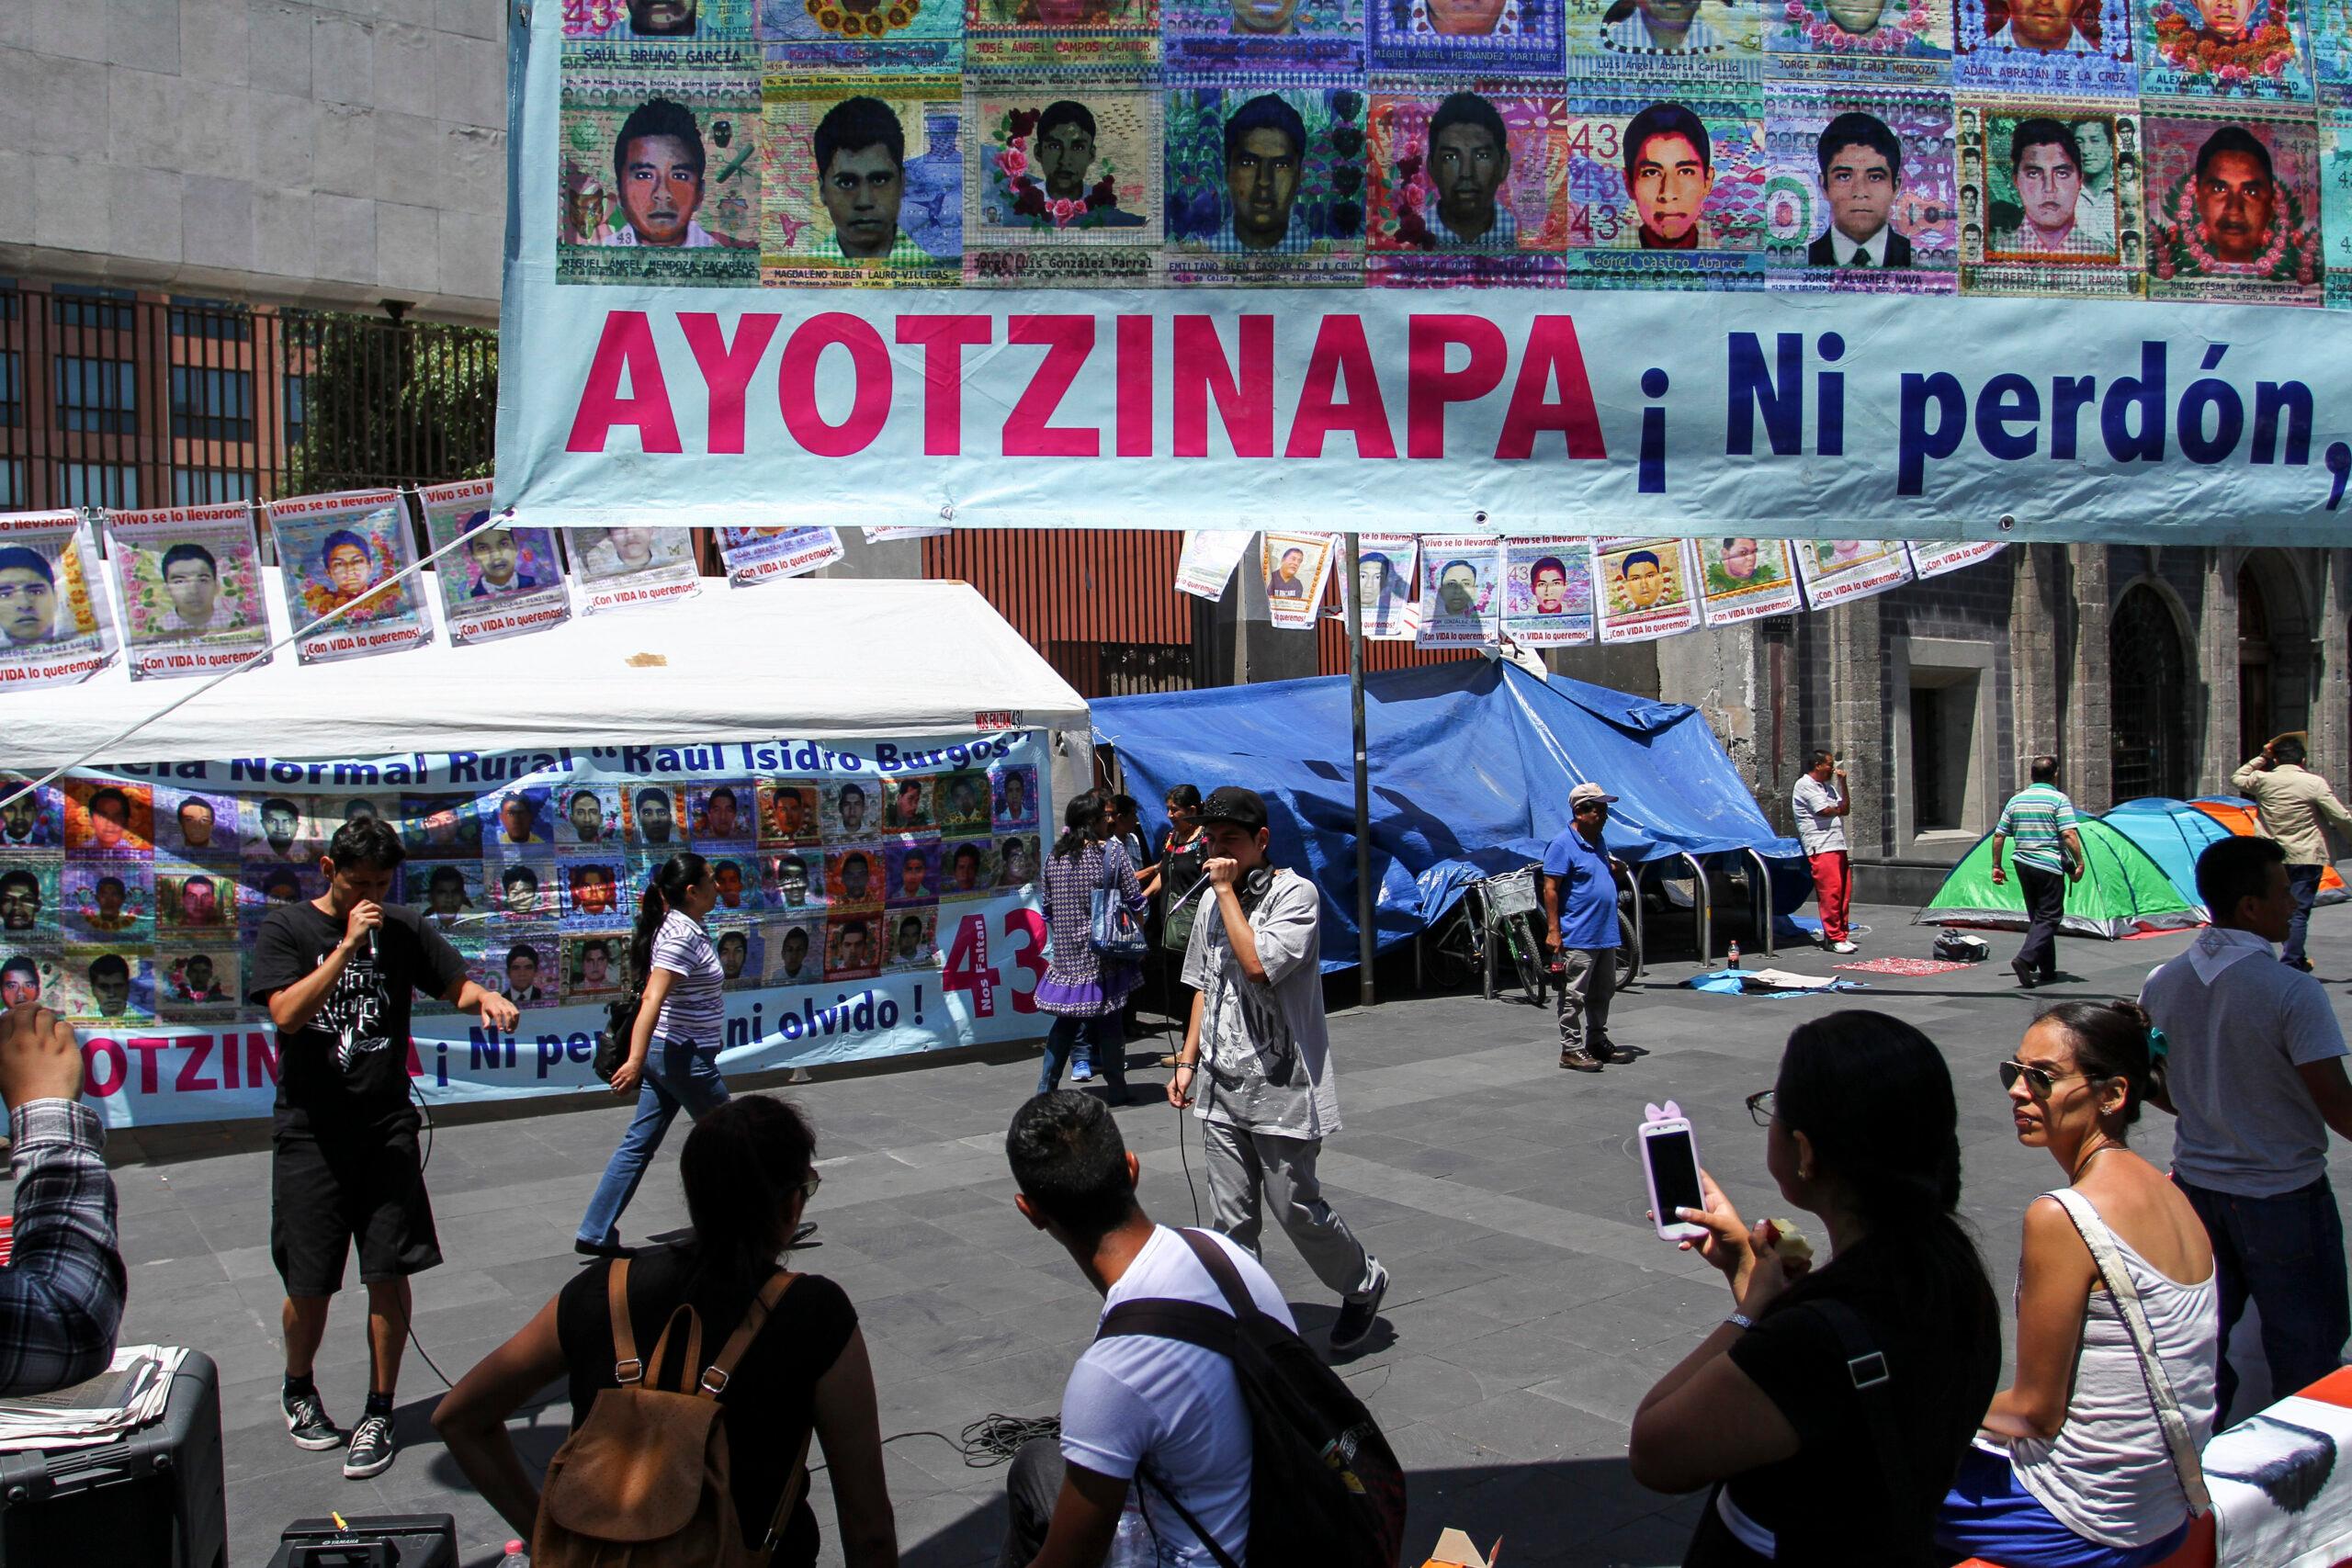 Personal de Protección Civil de Iguala participó en los ataques y desaparición de normalistas